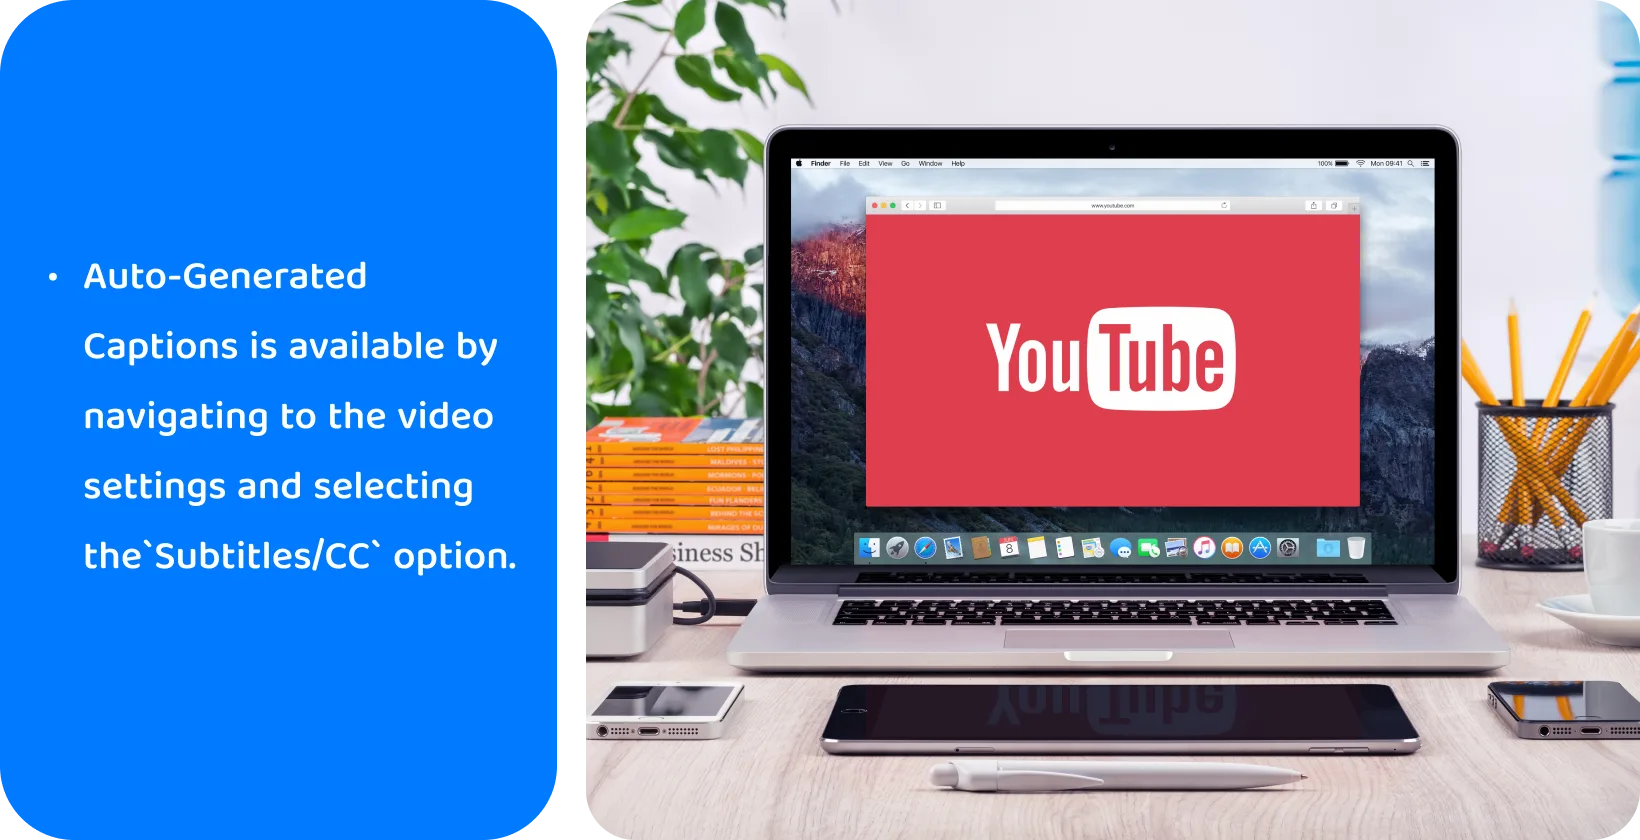 笔记本电脑屏幕上的 YouTube，促进使用自动生成的字幕来实现视频可访问性和 SEO。